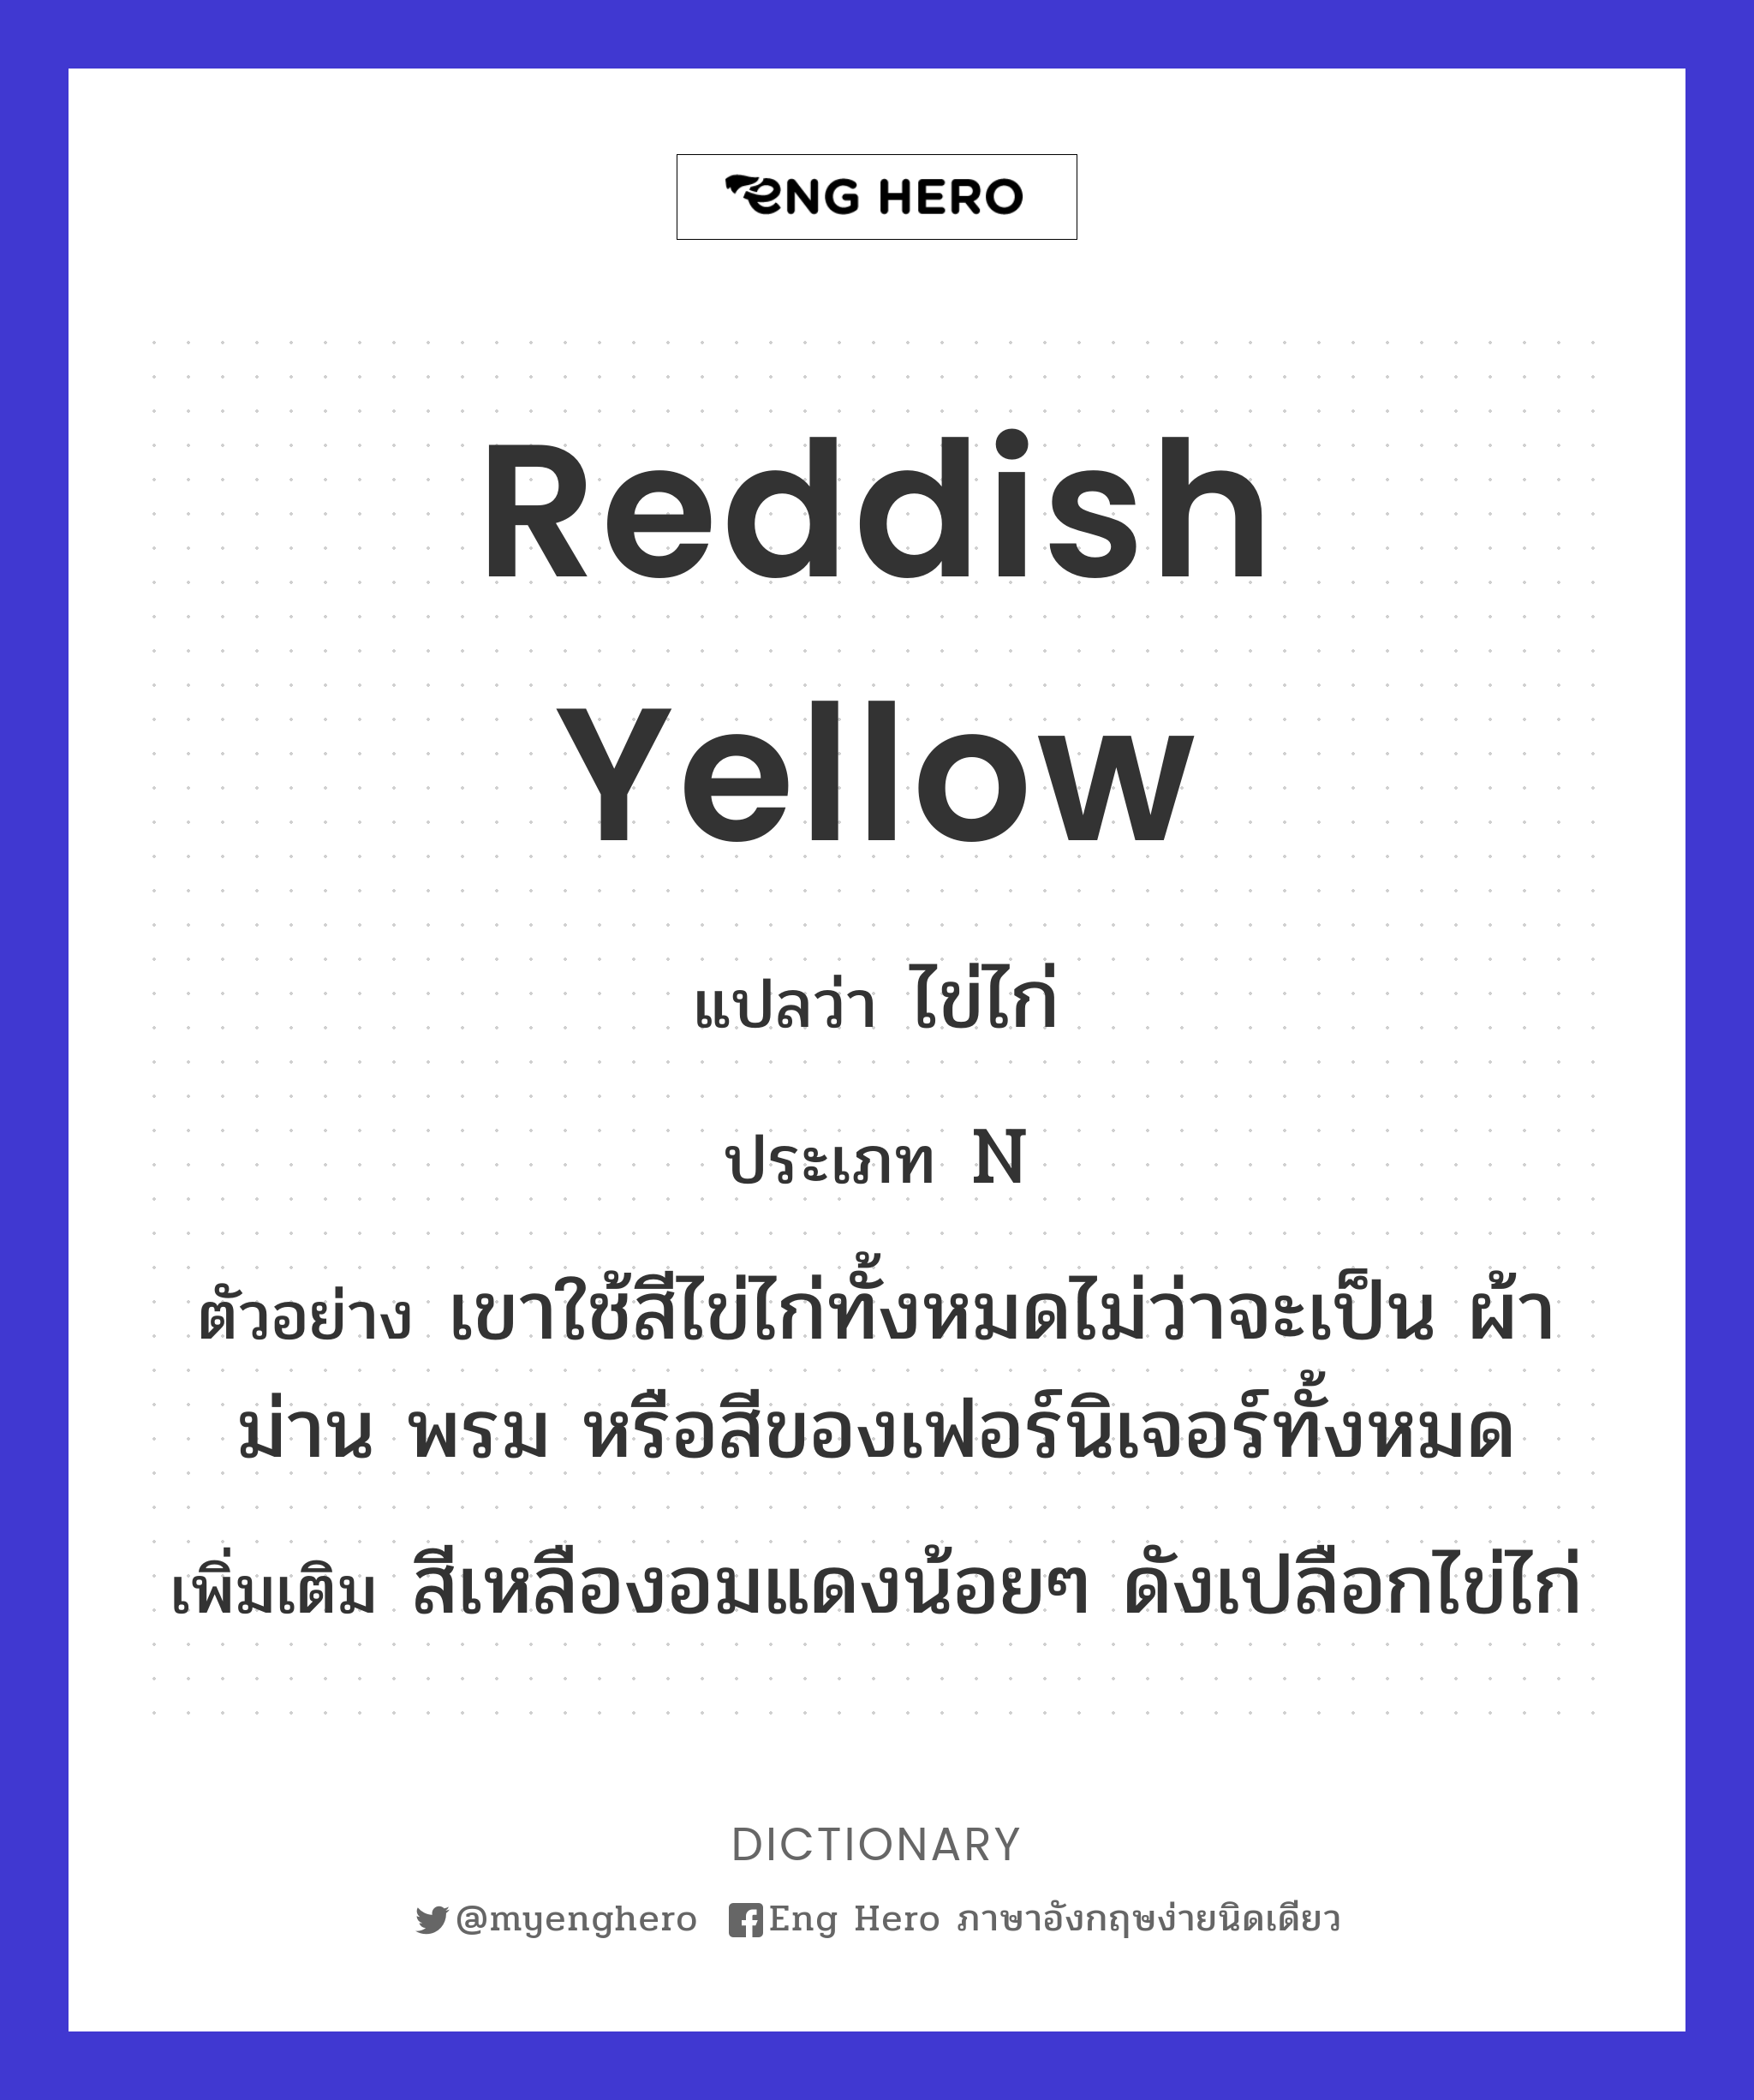 reddish yellow